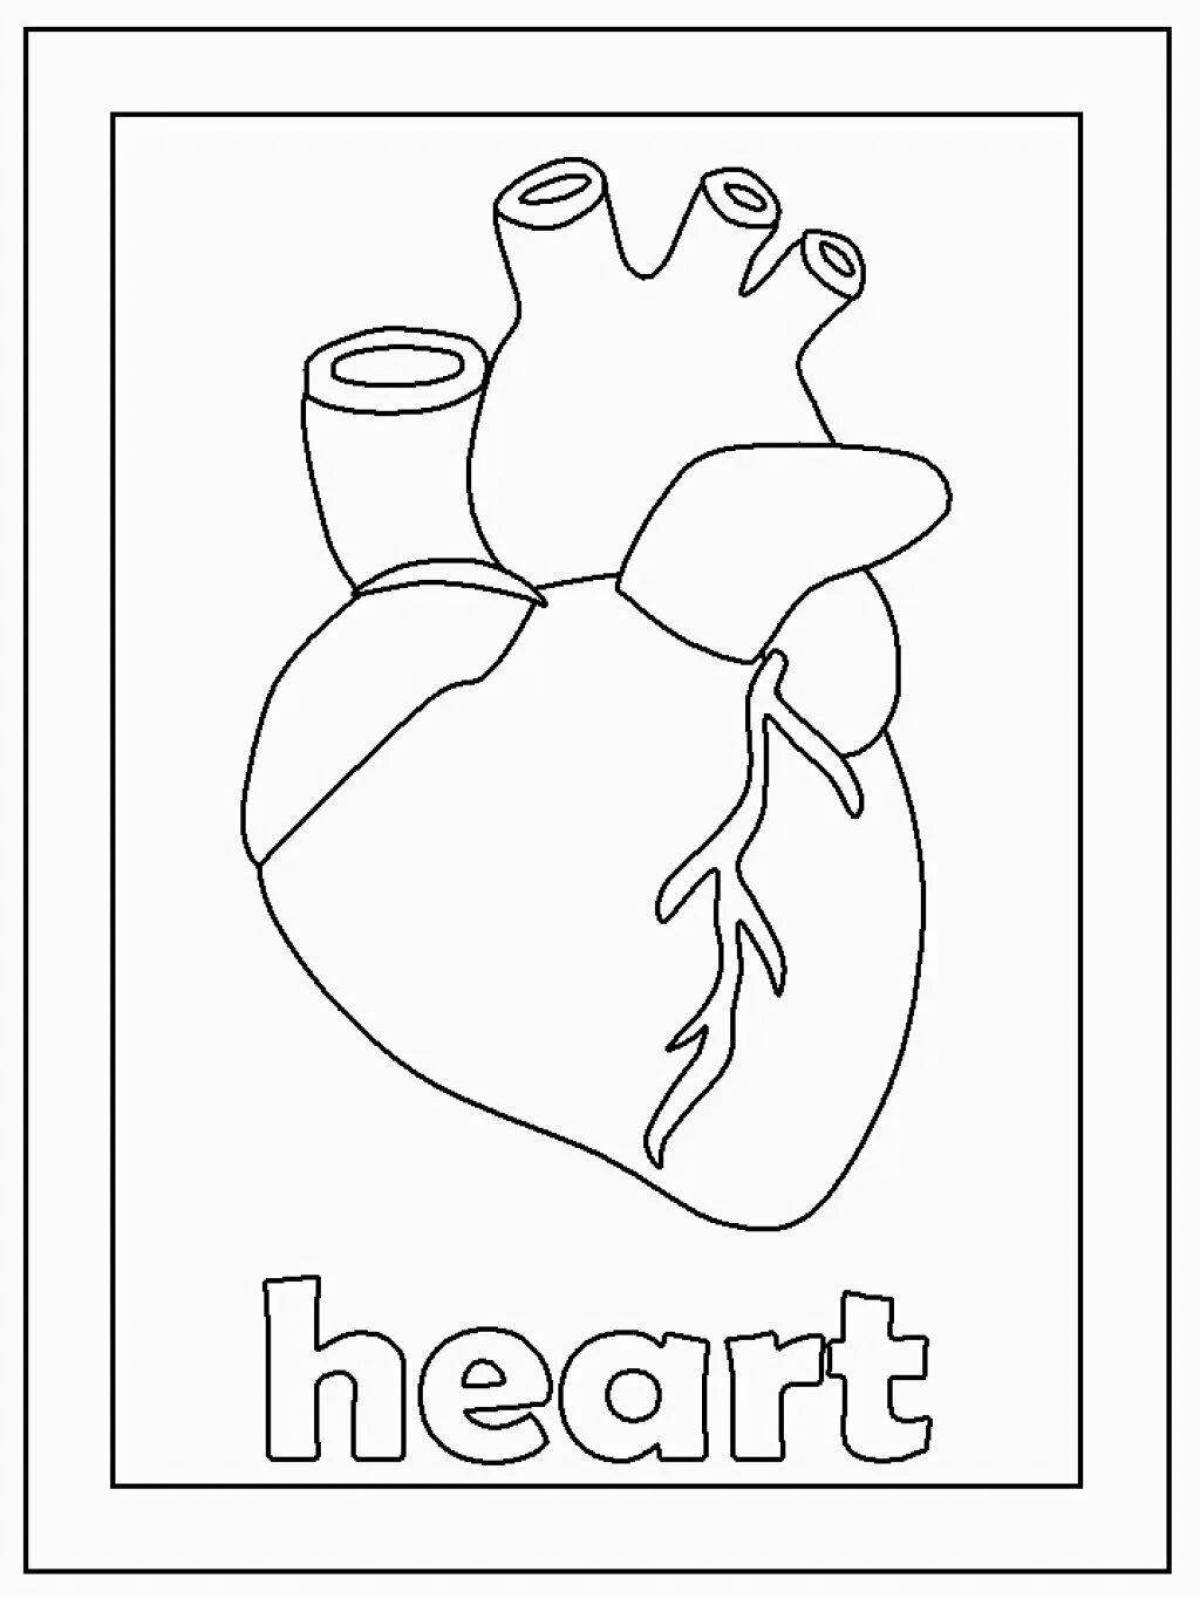 Impressive heart organ coloring book